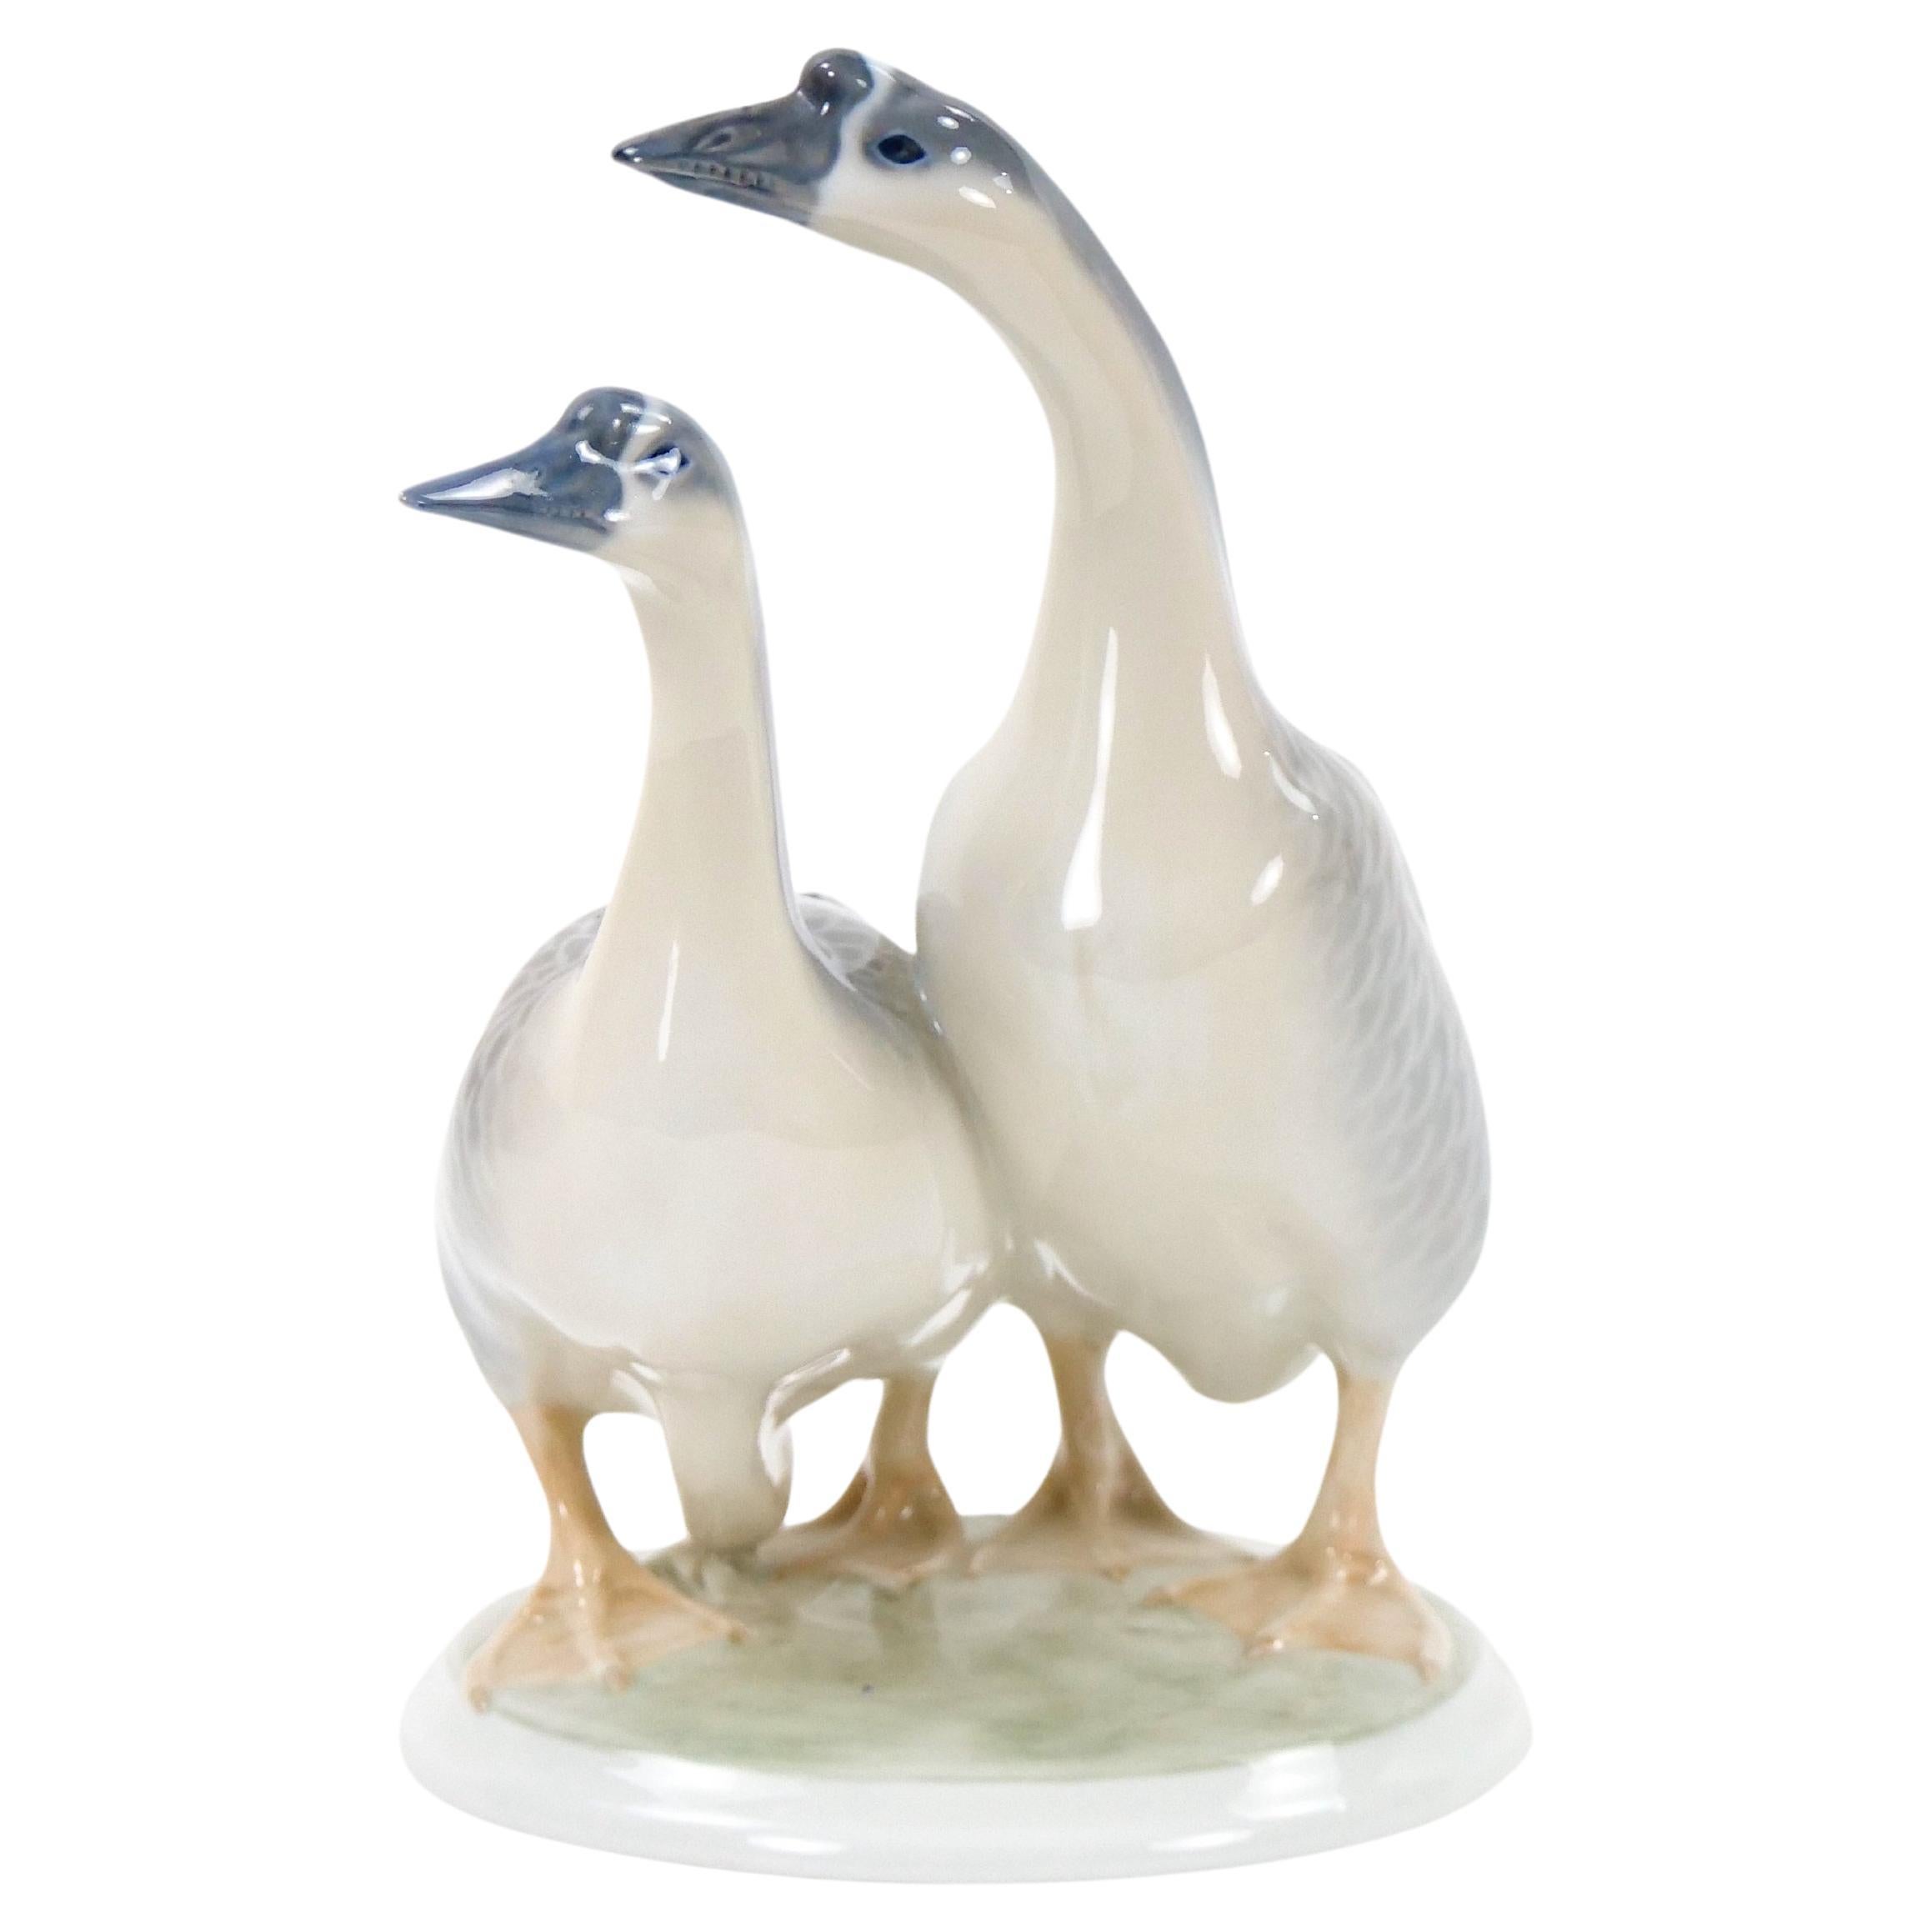 Glazed Porcelain Royal Copenhagen Decorative Pair Duck Decorative Sculpture For Sale